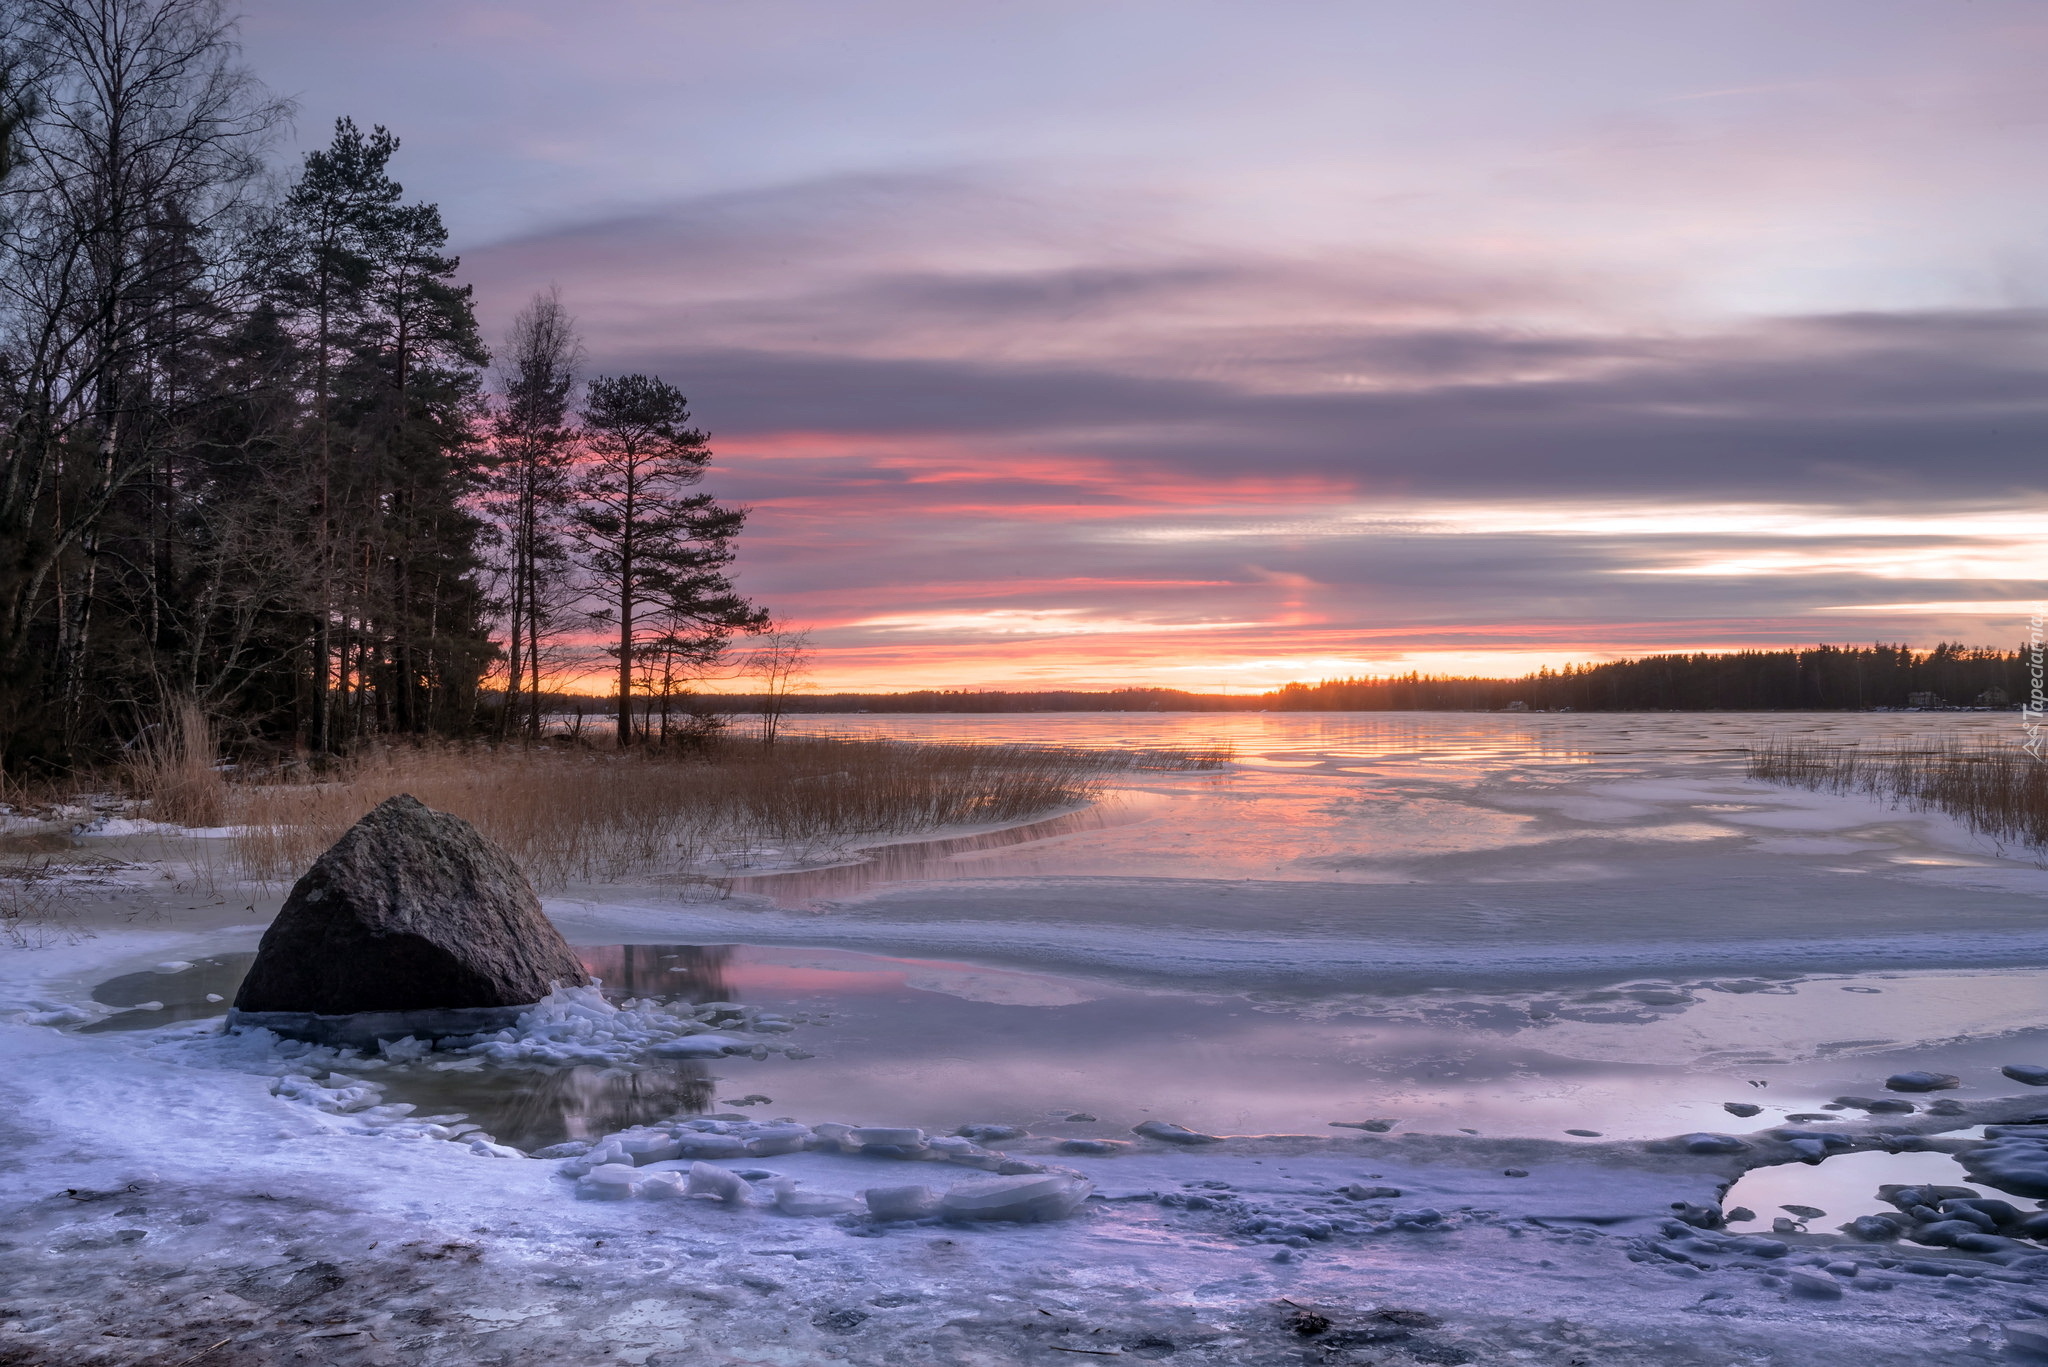 Finlandia, Miasto Kotka, Zatoka Fińska, Zachód słońca, Zima, Drzewa, Kamień